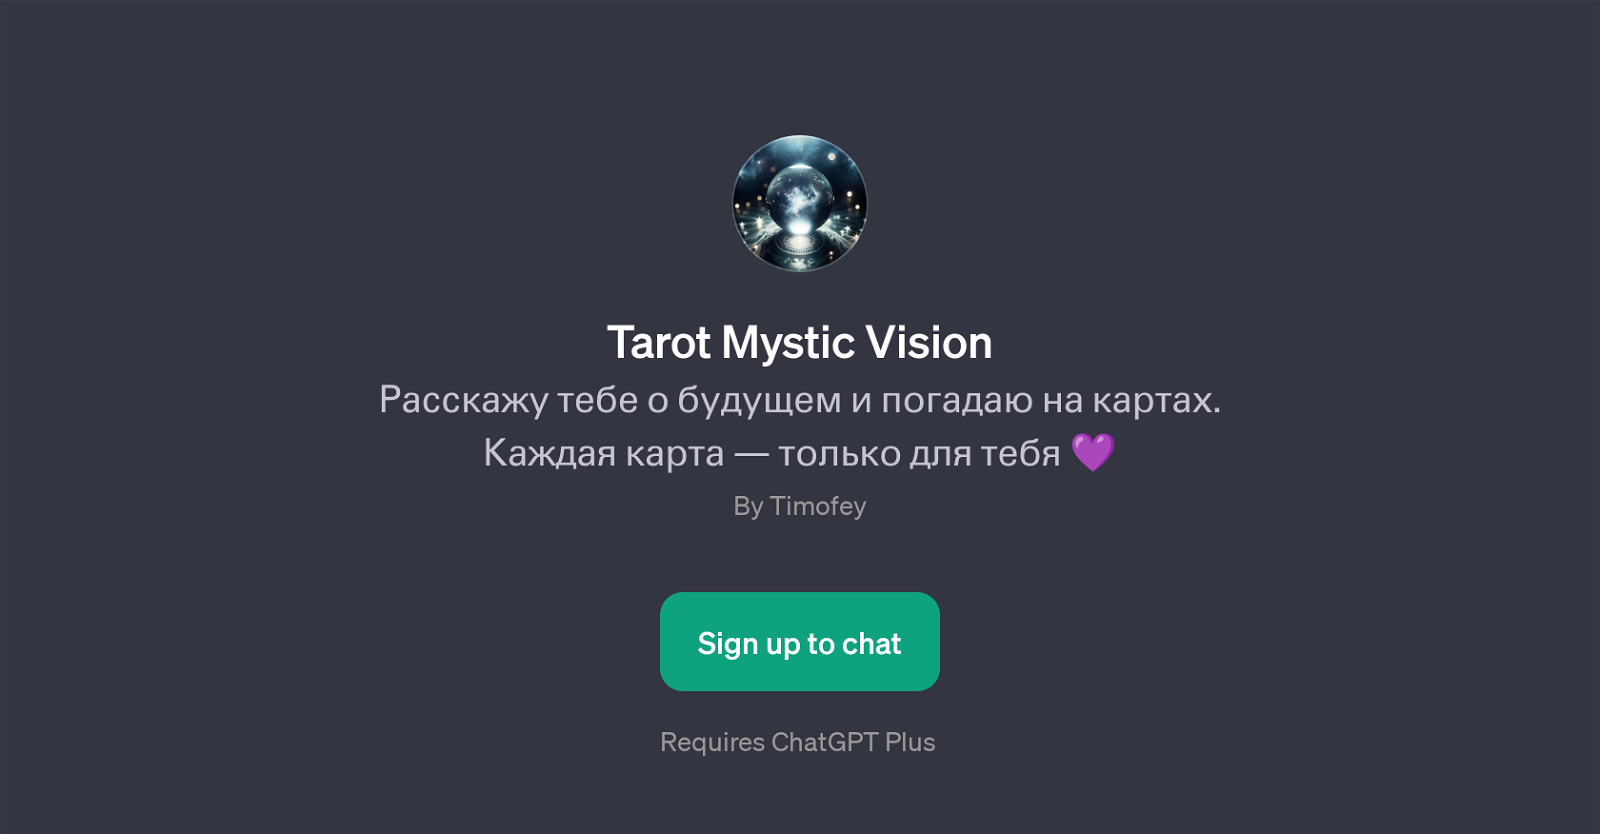 Tarot Mystic Vision website